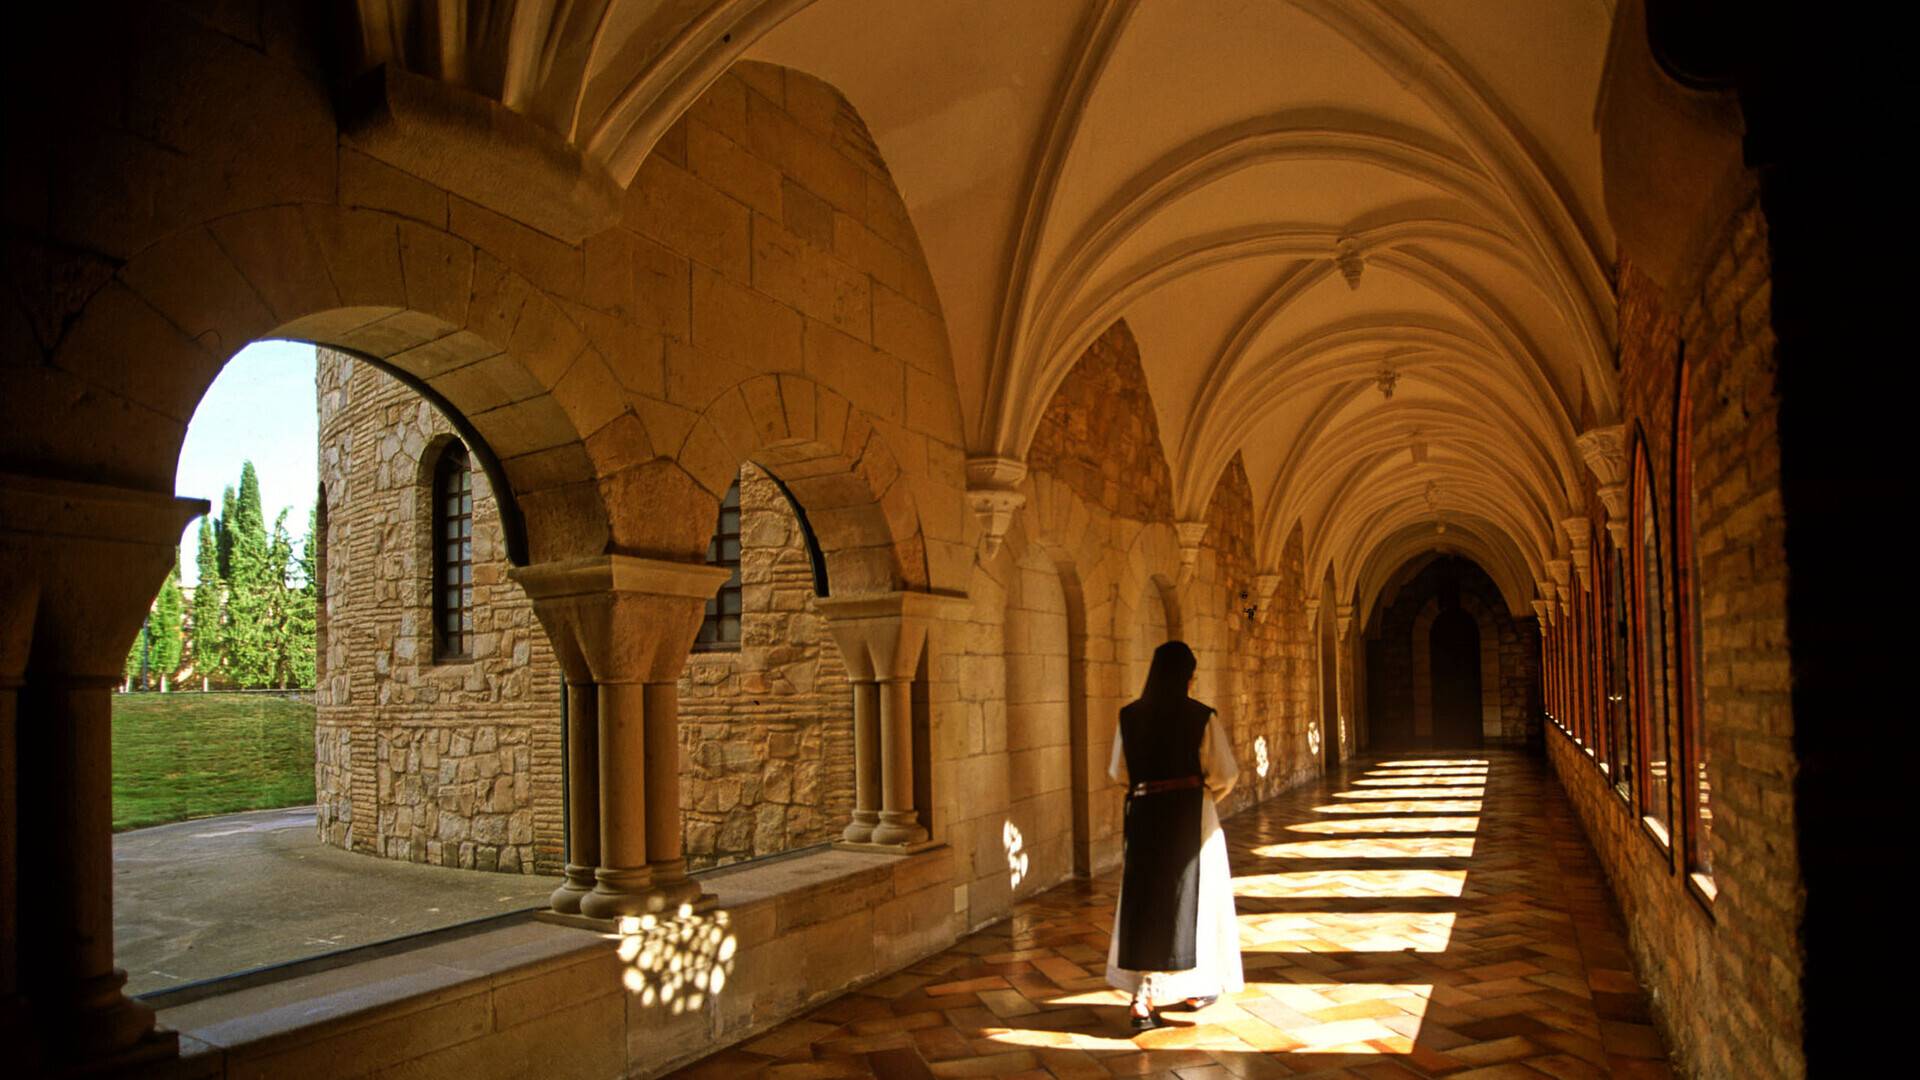 Tulebras Monastery Museum, guided tour